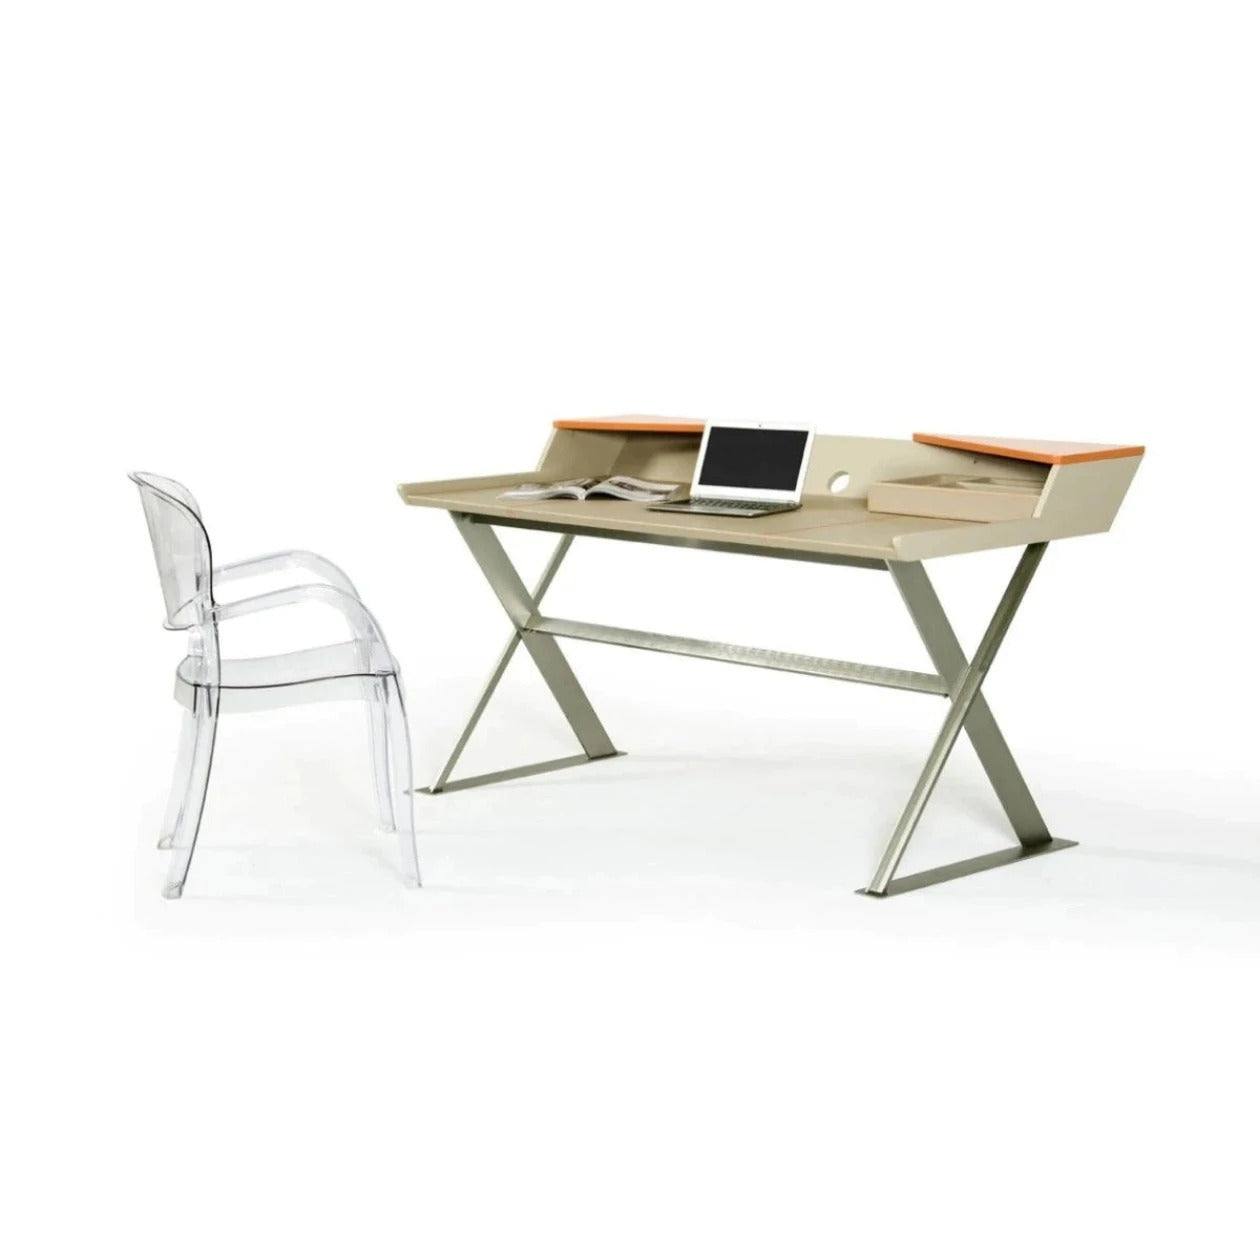 Office Desk Design, Best Computer Table Design For Home, Desk Design, Designer Desk, Computer Desk Design, Modern Executive Office Table Design, Executive Table Design